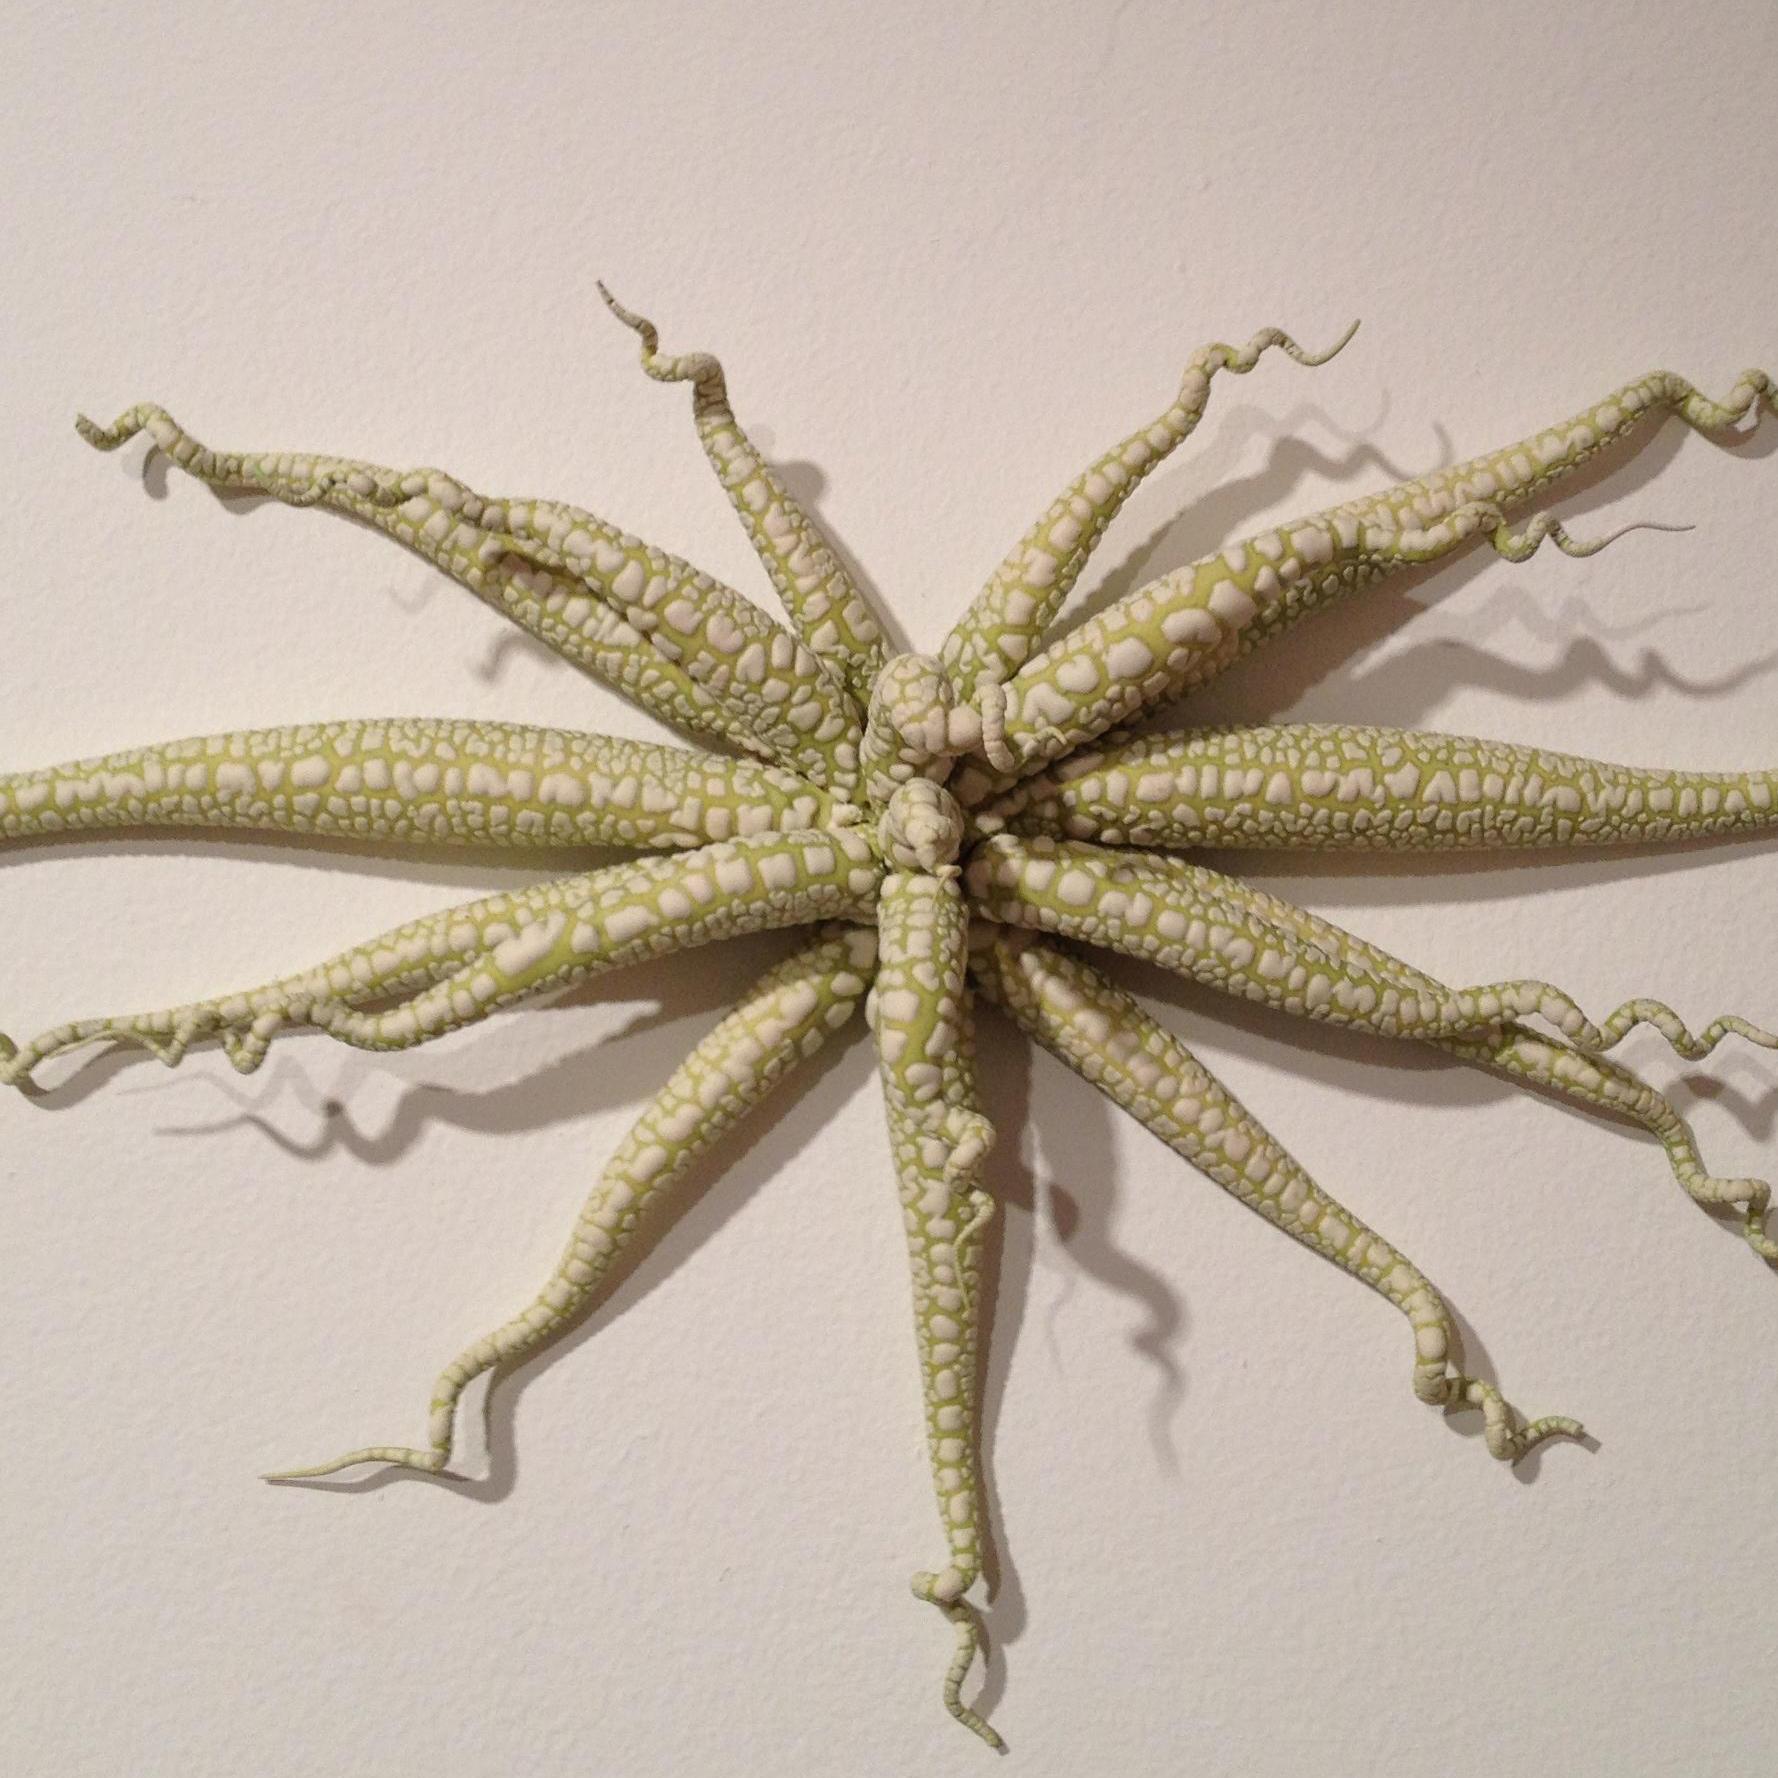 Christopher Adams, Untitled, Biomorphic ceramic sculpture, 2009 1